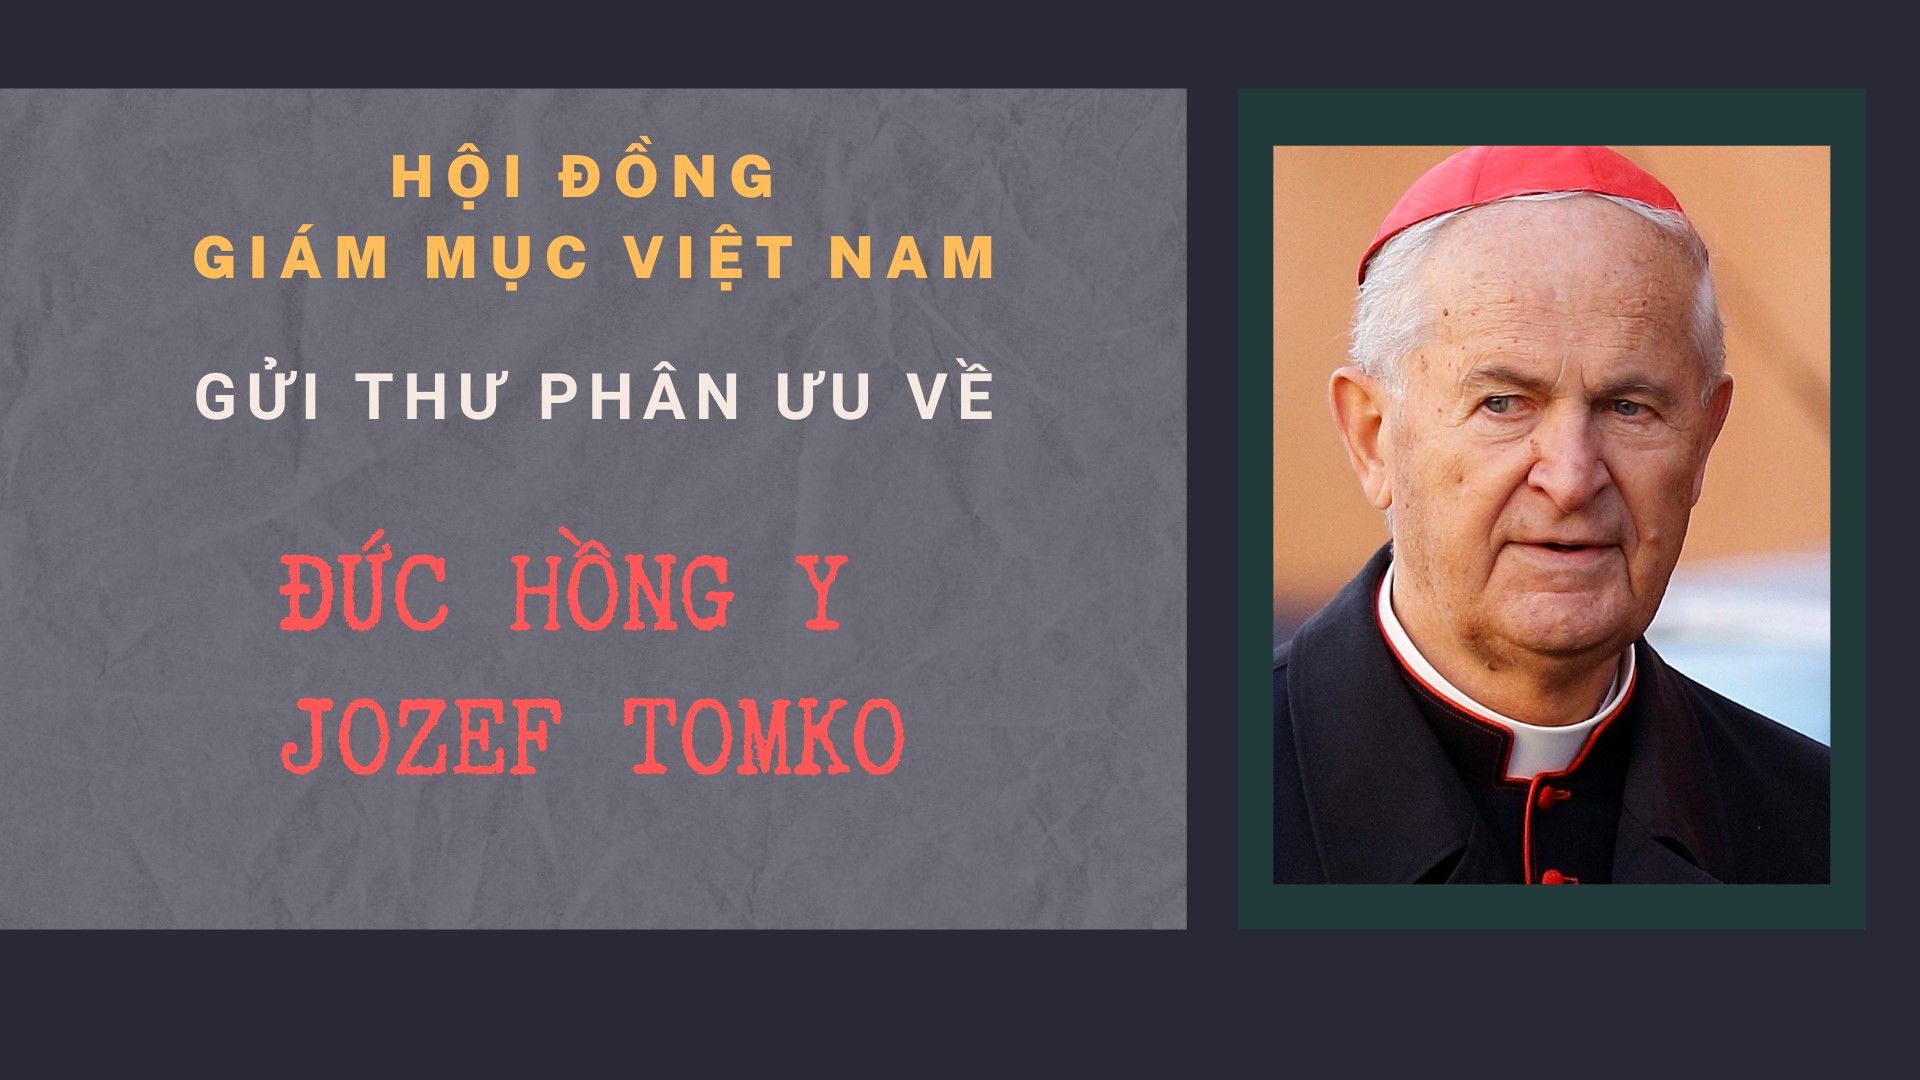 Hội đồng Giám mục Việt Nam gửi thư phân ưu về Đức Hồng y Jozef Tomko